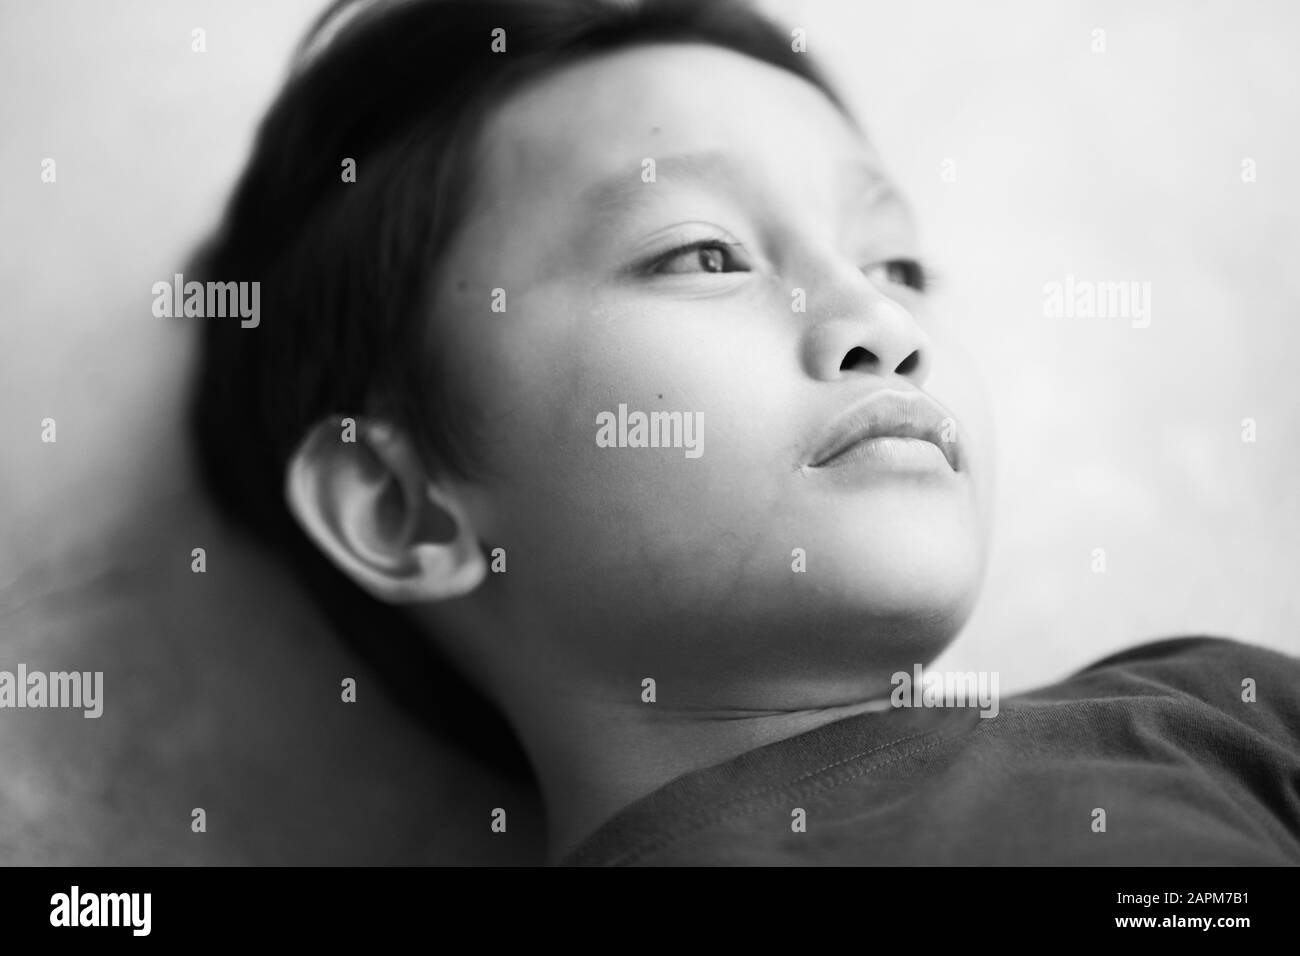 Little boy portrait close up face on concrete background Stock Photo